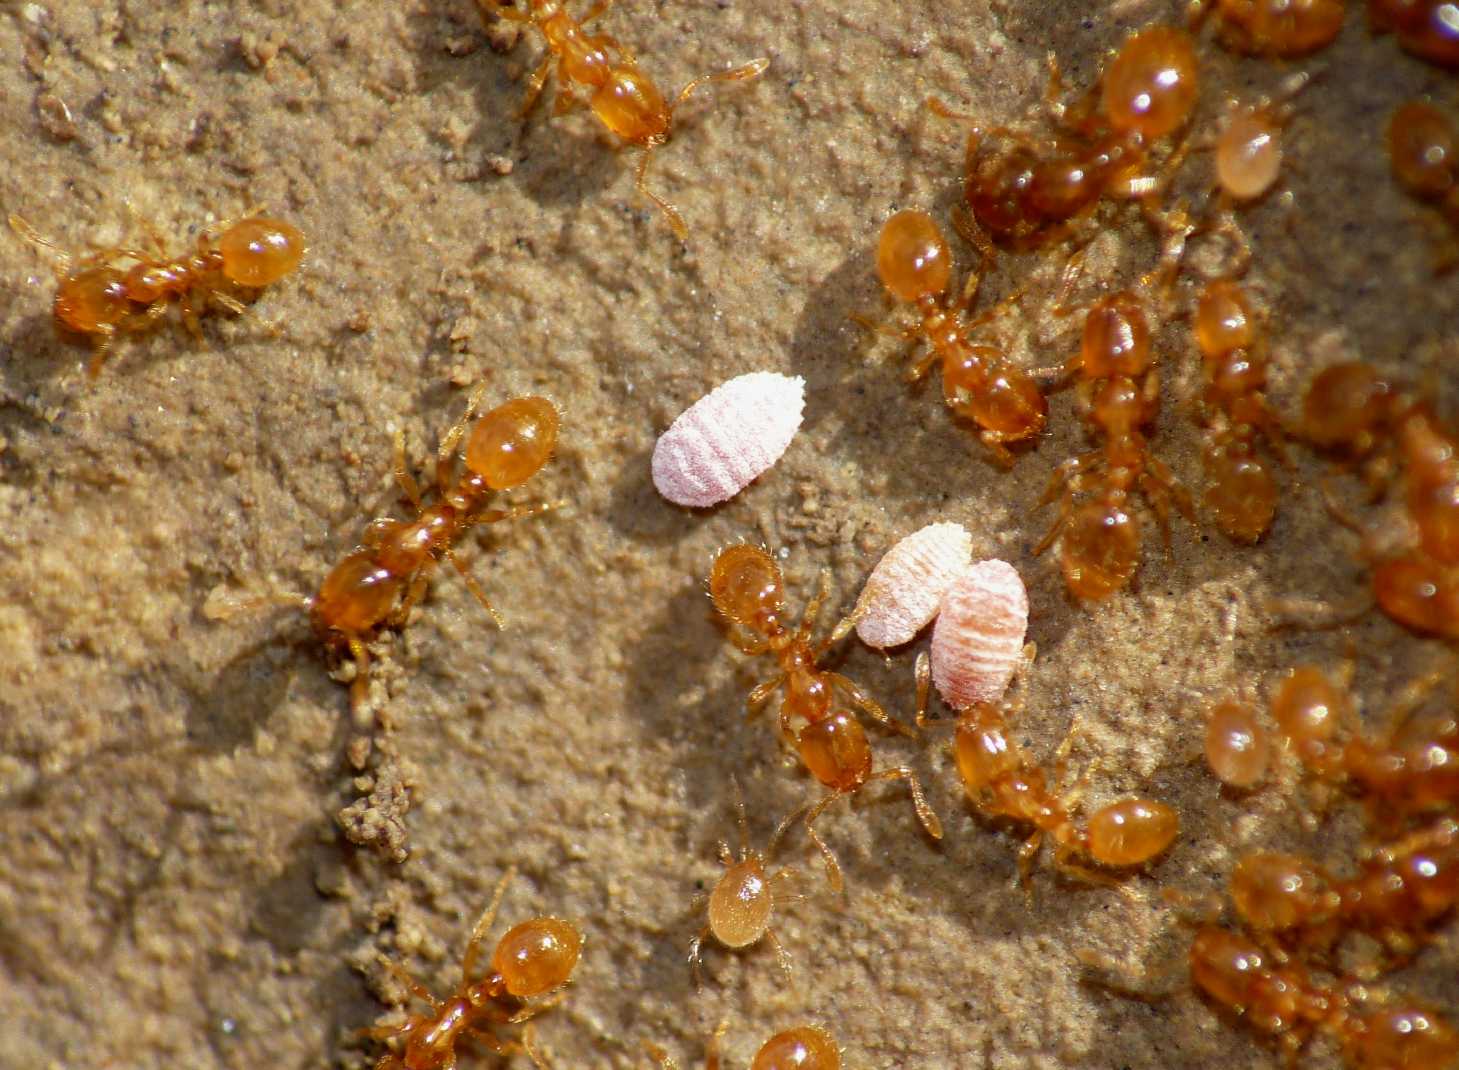 Ospiti delle formiche Solenopsis